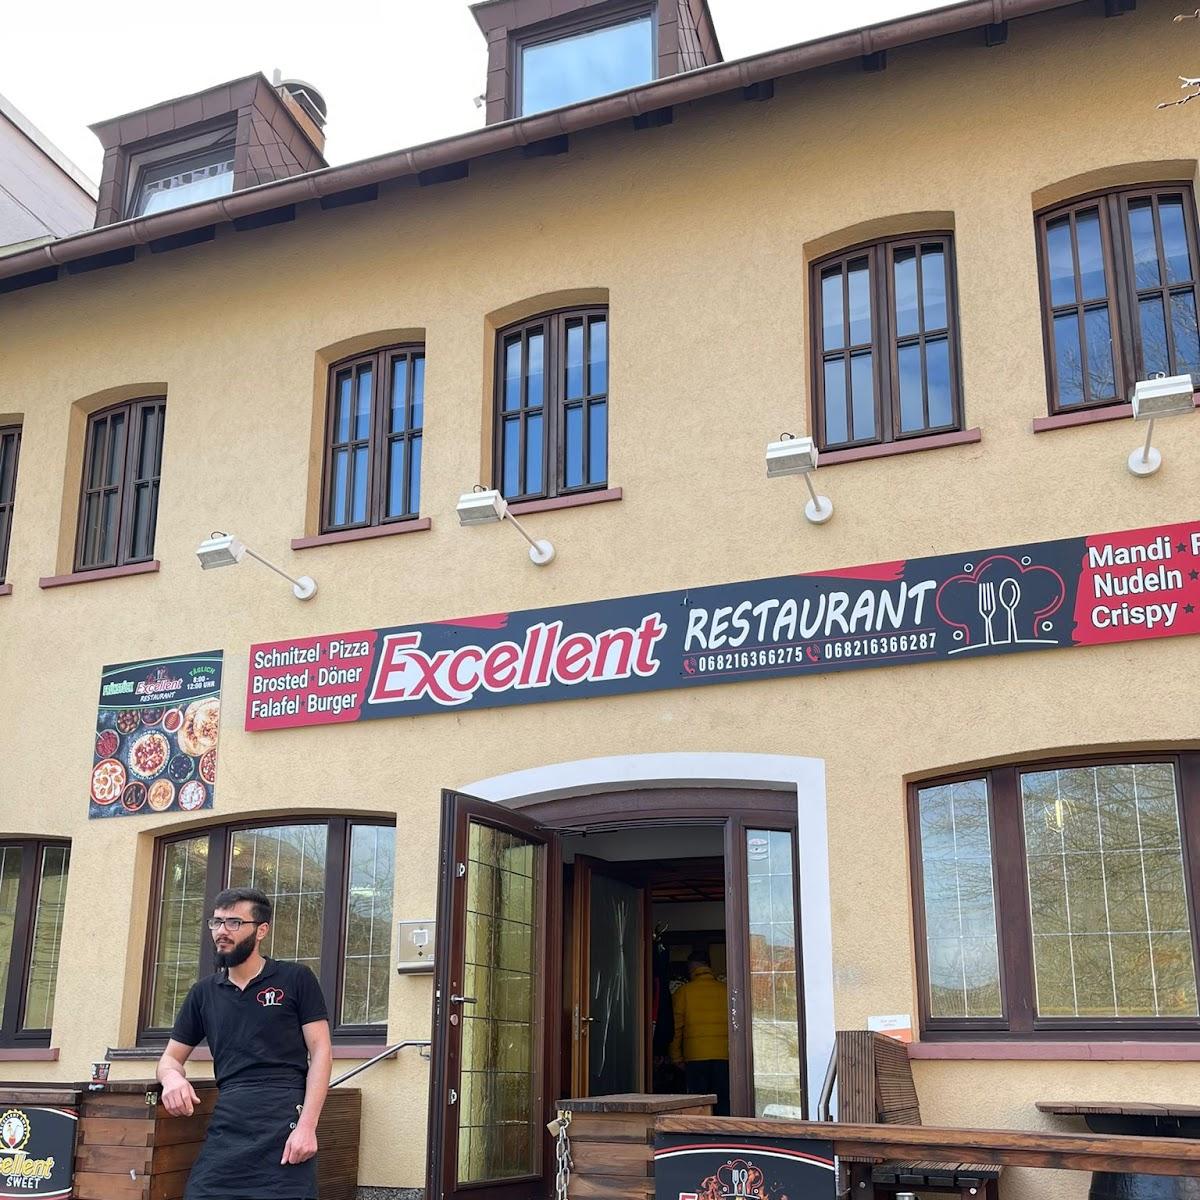 Restaurant "Excellent Restaurant -" in Neunkirchen